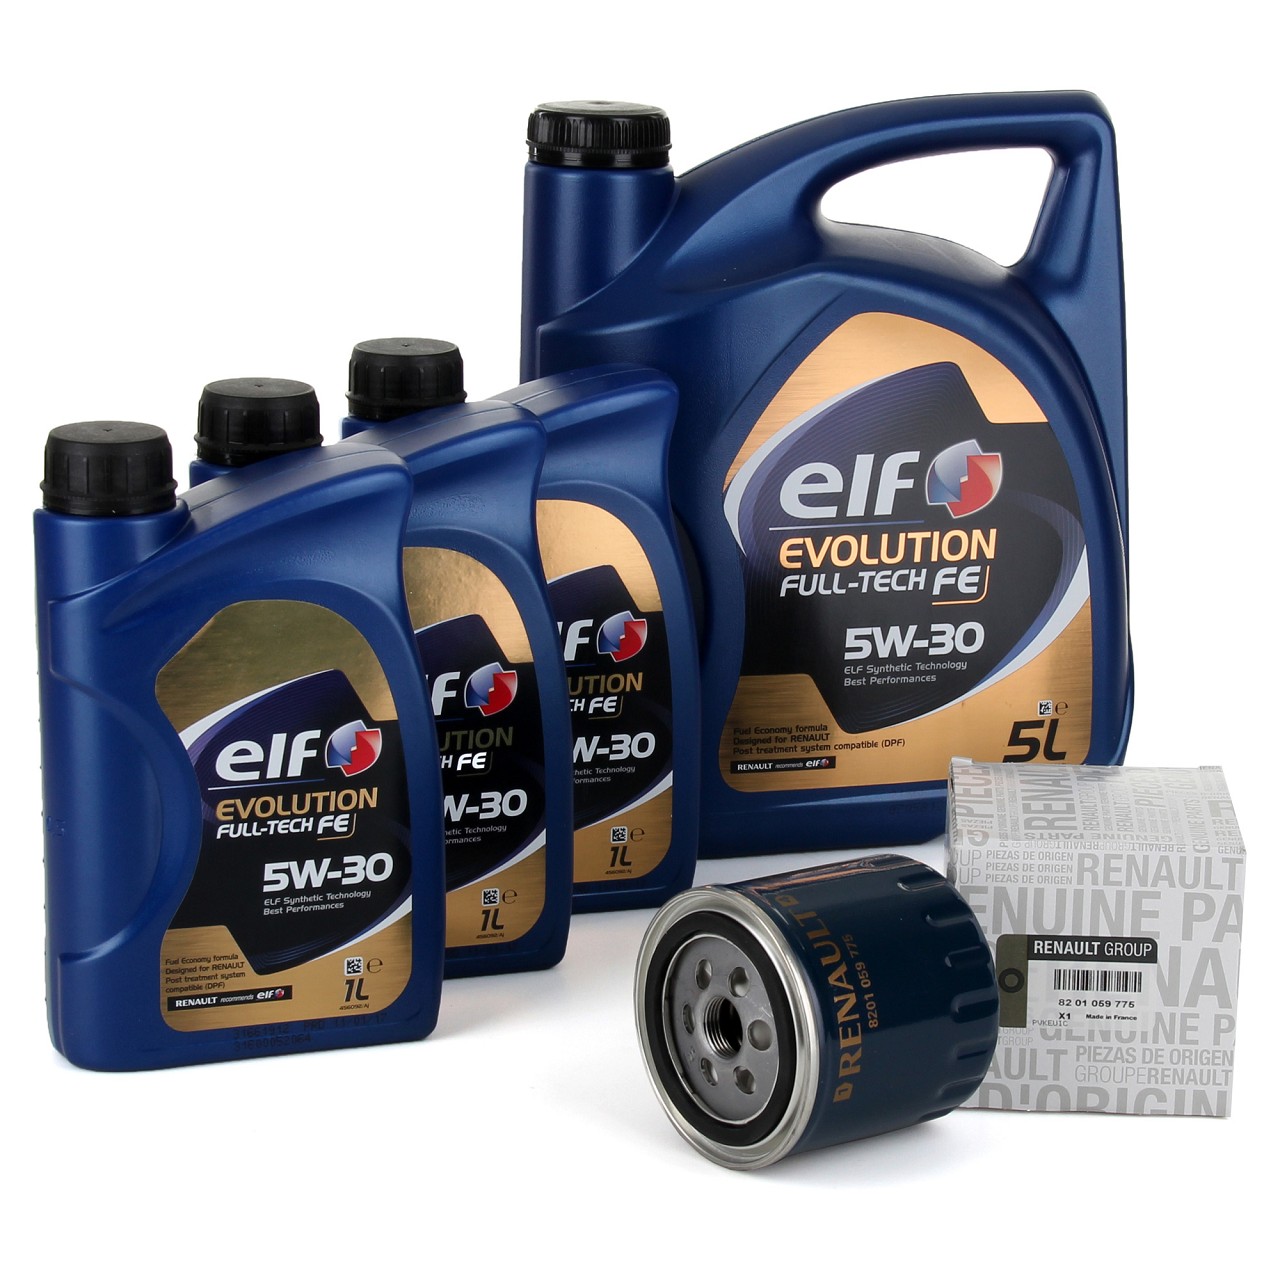 8L elf Evolution Full-Tech FE 5W-30 Motoröl ORIGINAL Renault Ölfilter 8201059775